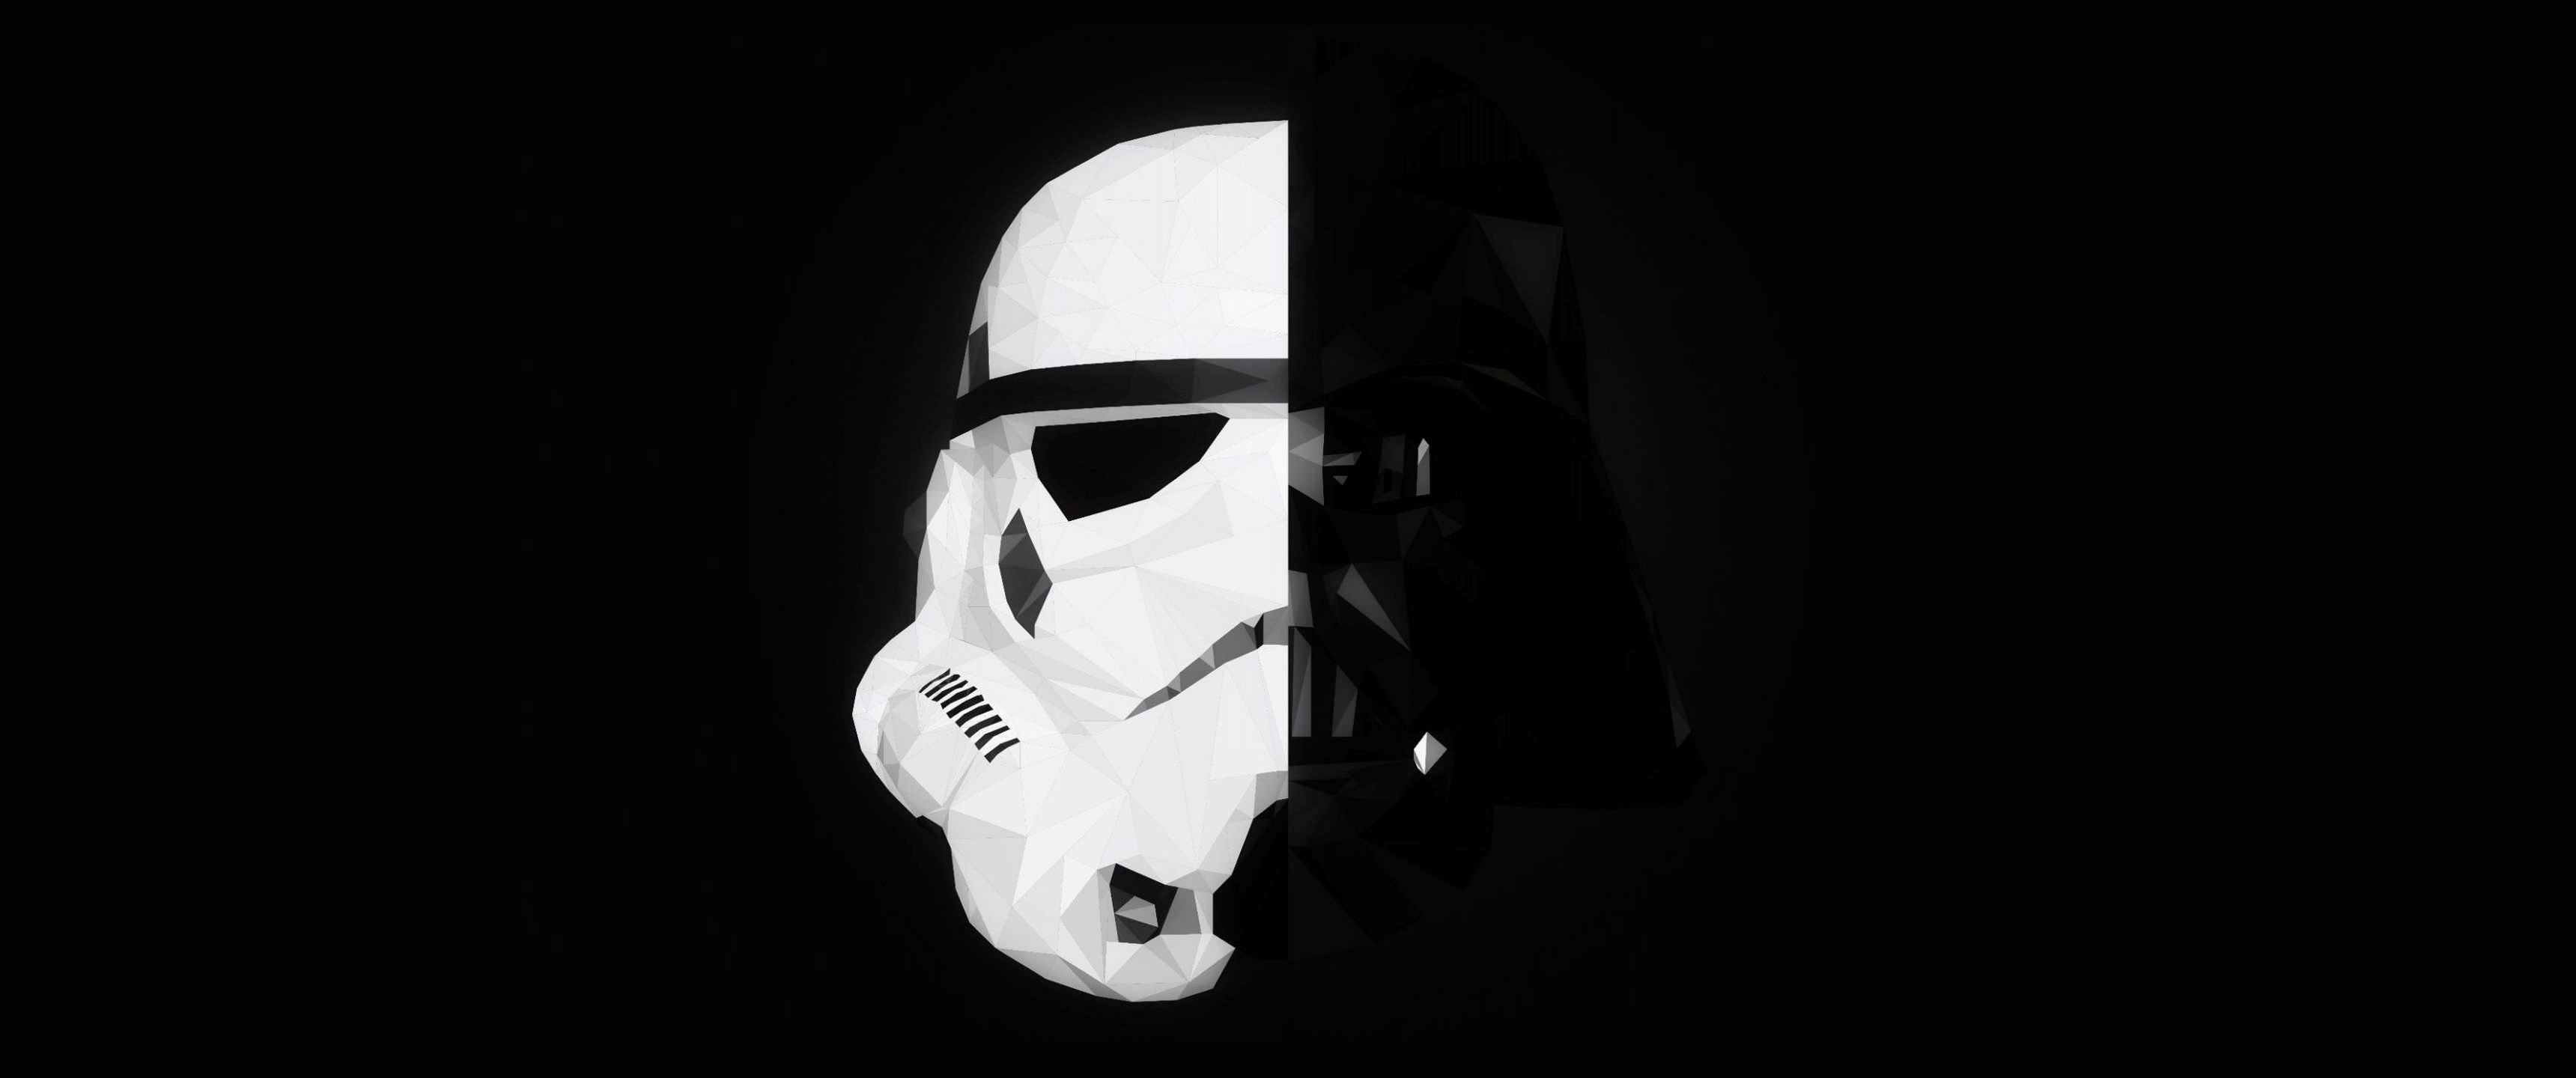 Star Wars, Stormtrooper, Darth Vader, Mask, Splitting, Minimalism Wallpaper HD / Desktop and Mobile Background